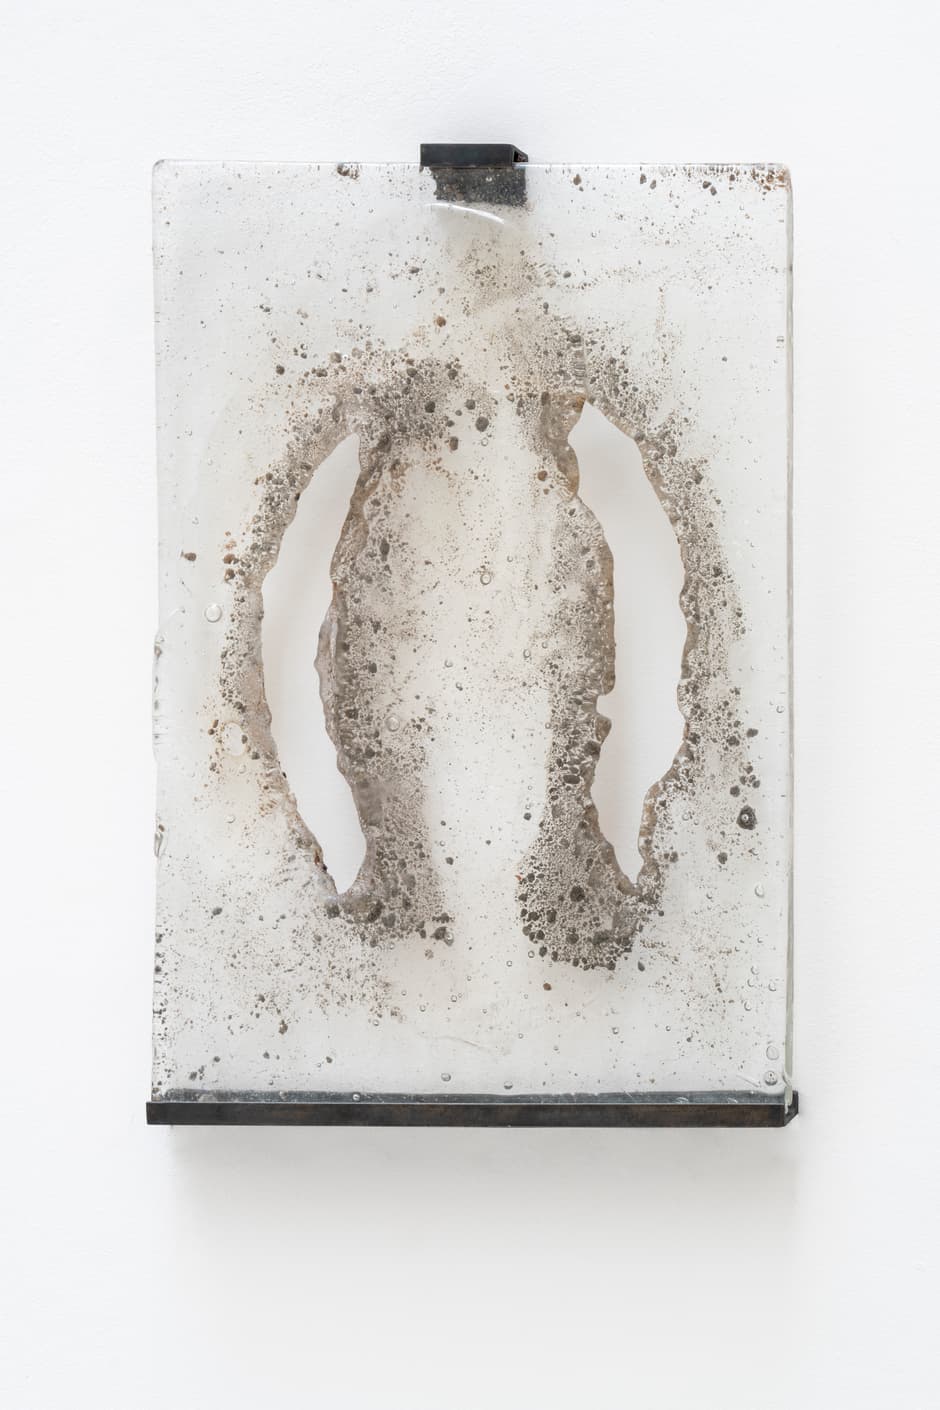 A.K.Burns, The event between, 2019. Verre, sable, 51 x 35,5 x 1,5 cm Achat à la galerie Galerie Michel Rein, Paris. Collection Frac des Pays de la Loire. © Droits réservés